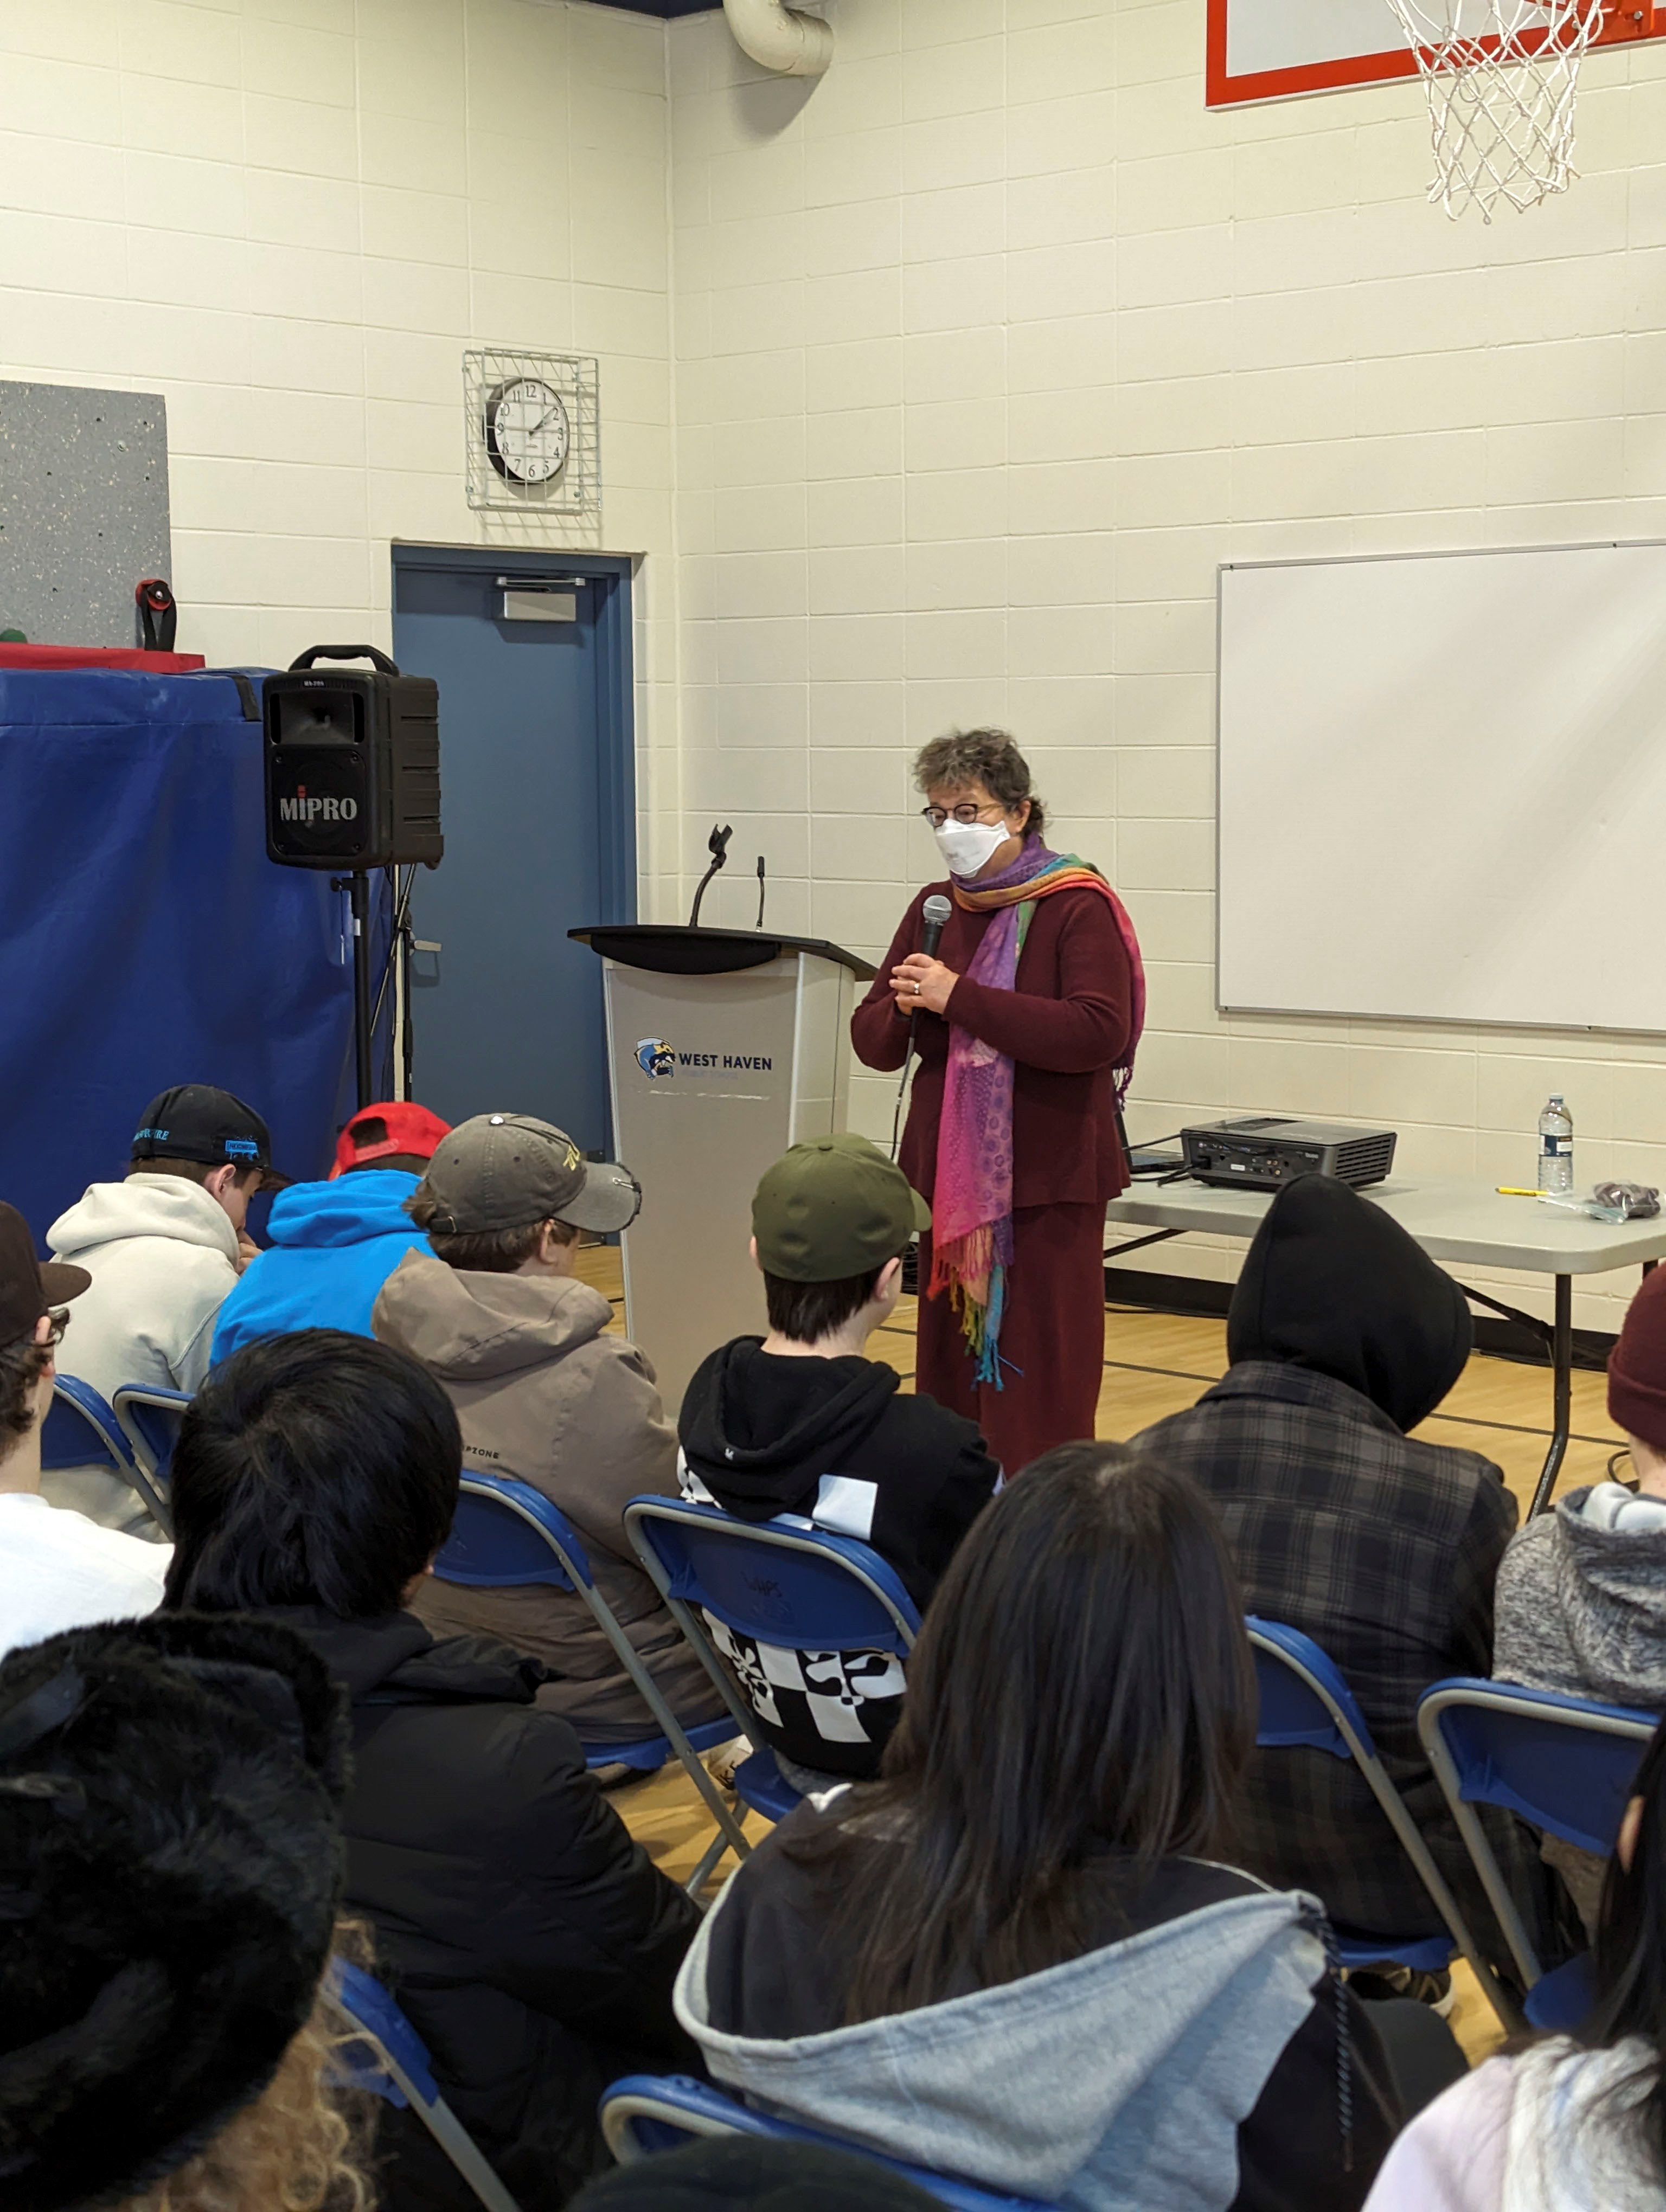 Le lundi 22 janvier 2024 – La sénatrice Paula Simons; visite scolaire organisée par S’ENgage; École publique West Haven, Leduc, Alberta.